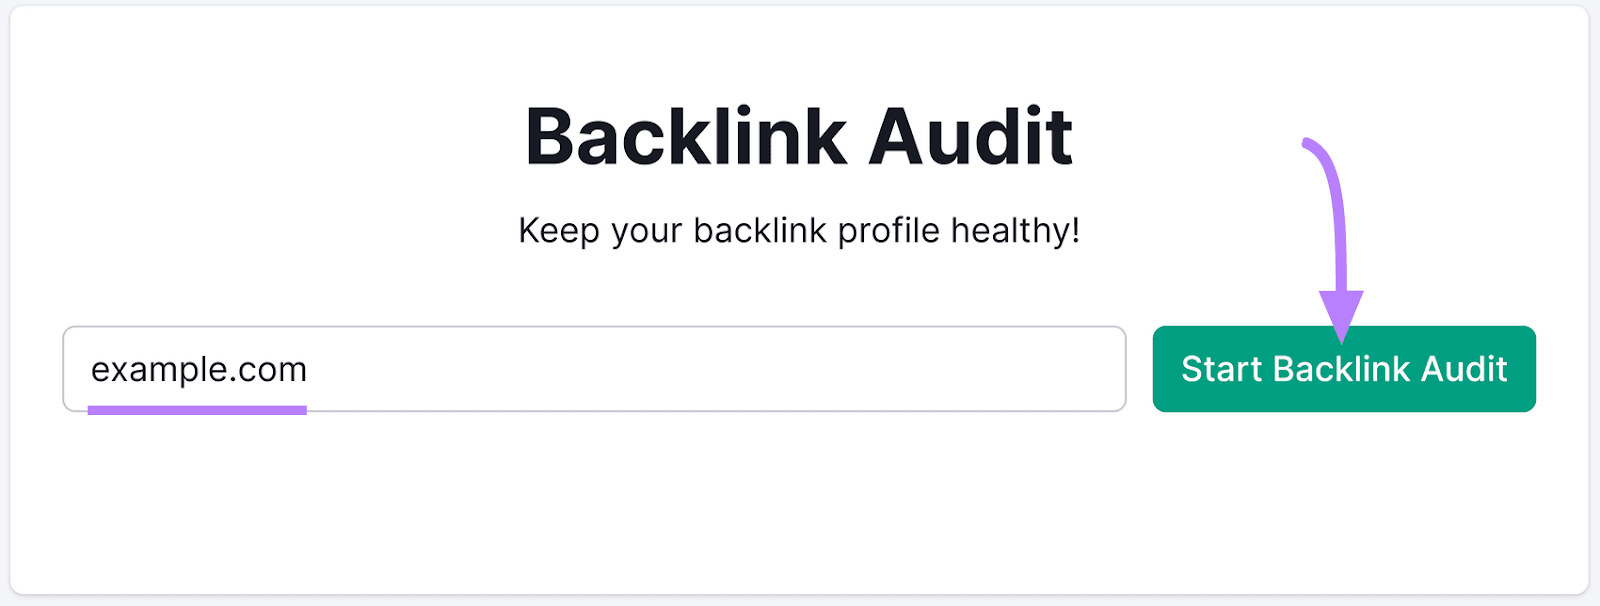 Backlink Audit tool